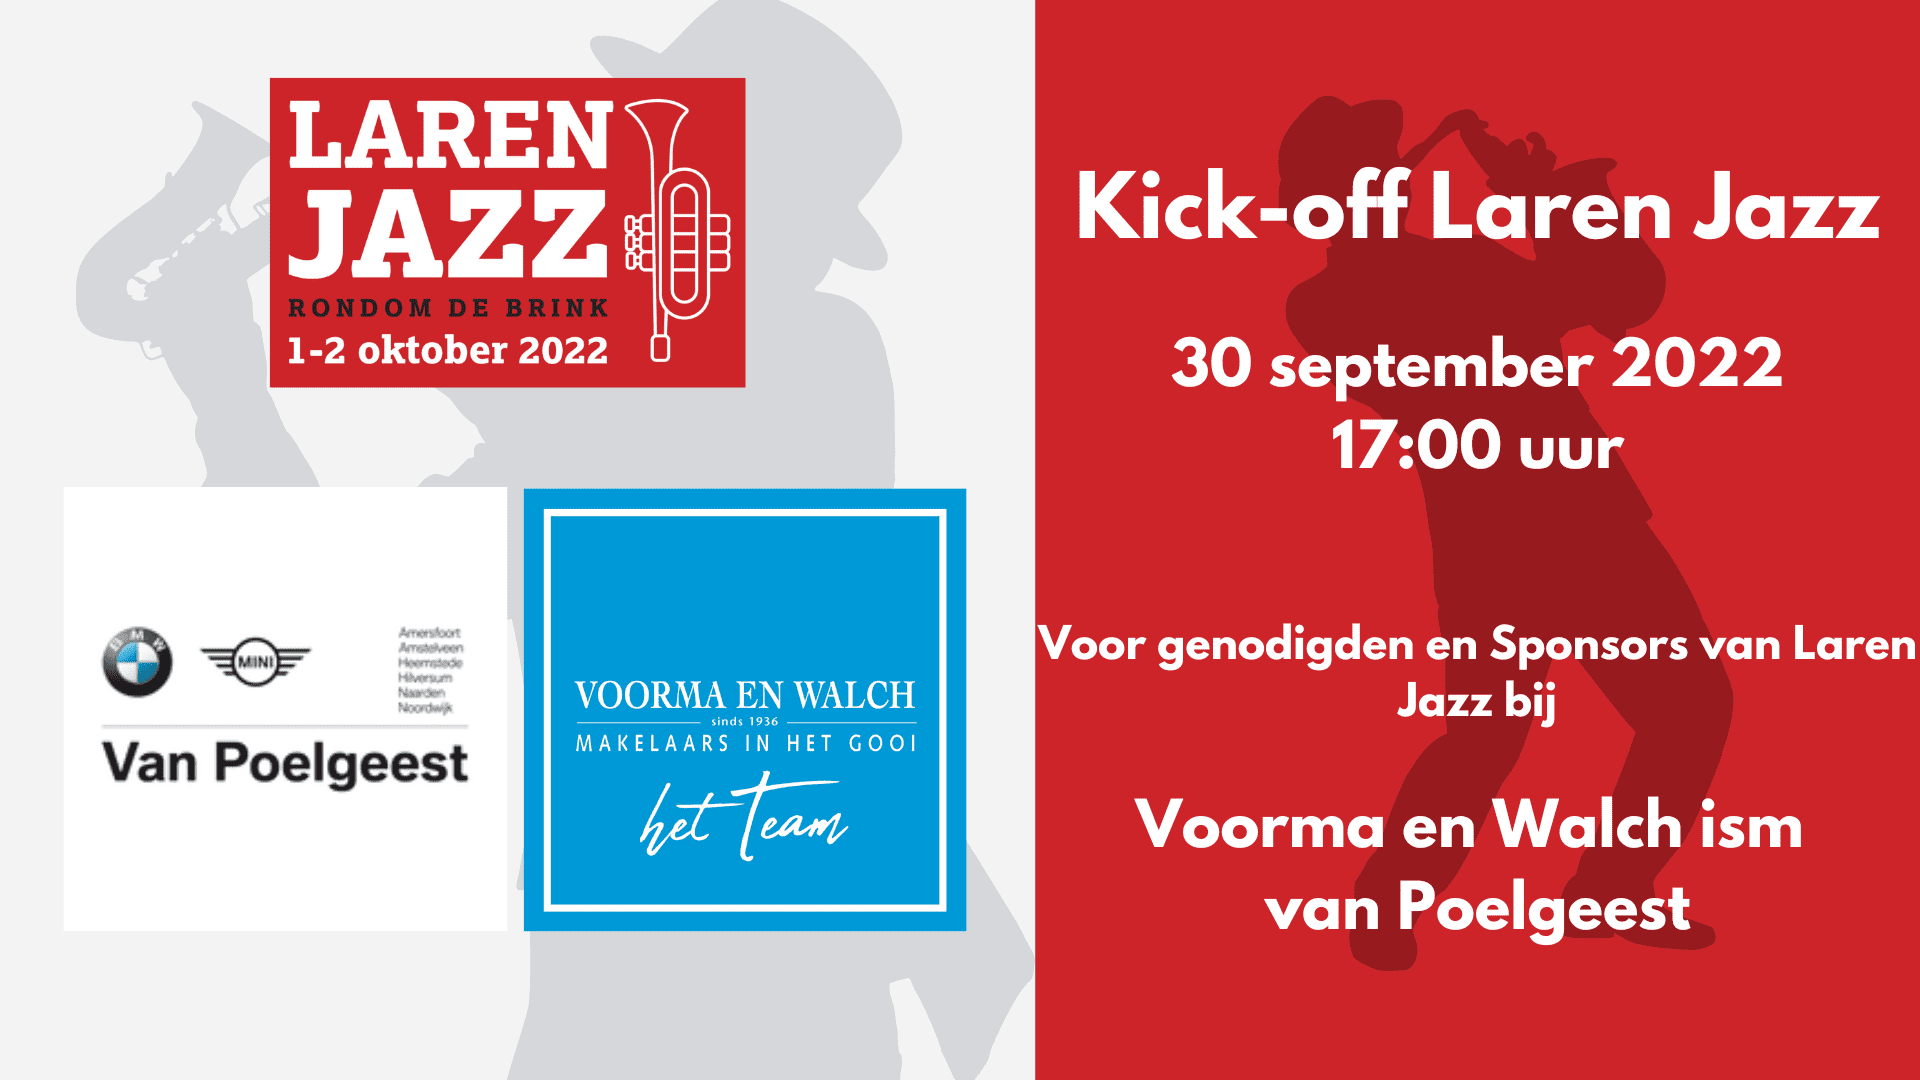 Kick Off Laren Jazz Bij Voorma Walch